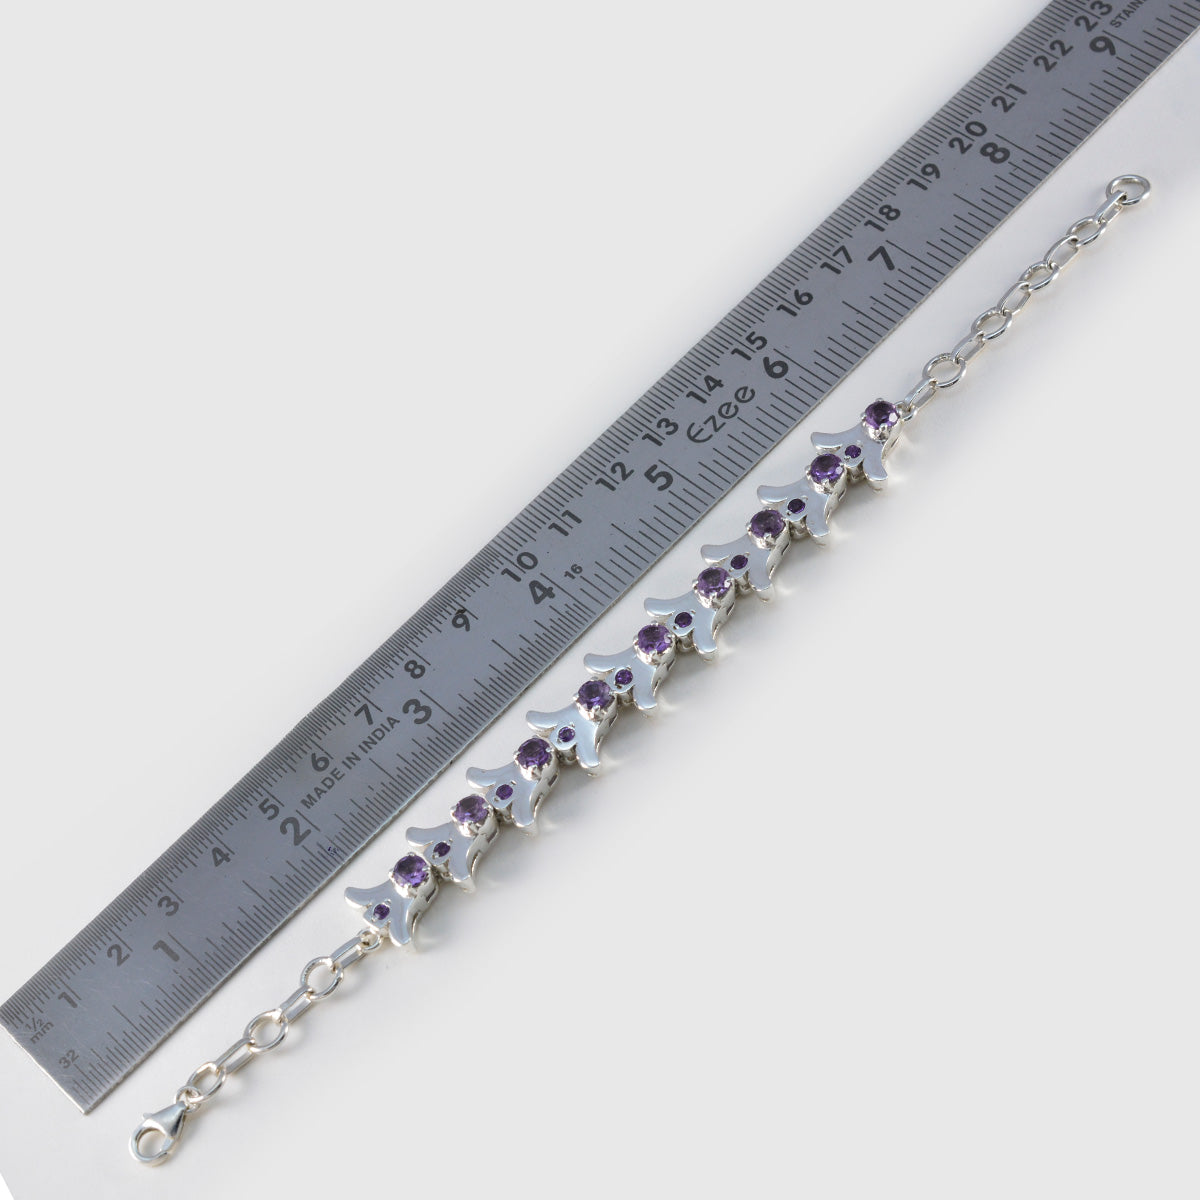 riyo ädelsten 925 sterling silver armband för flickor ametist armband stift inställning armband med fisk krok länk armband l storlek 6-8,5 tum.